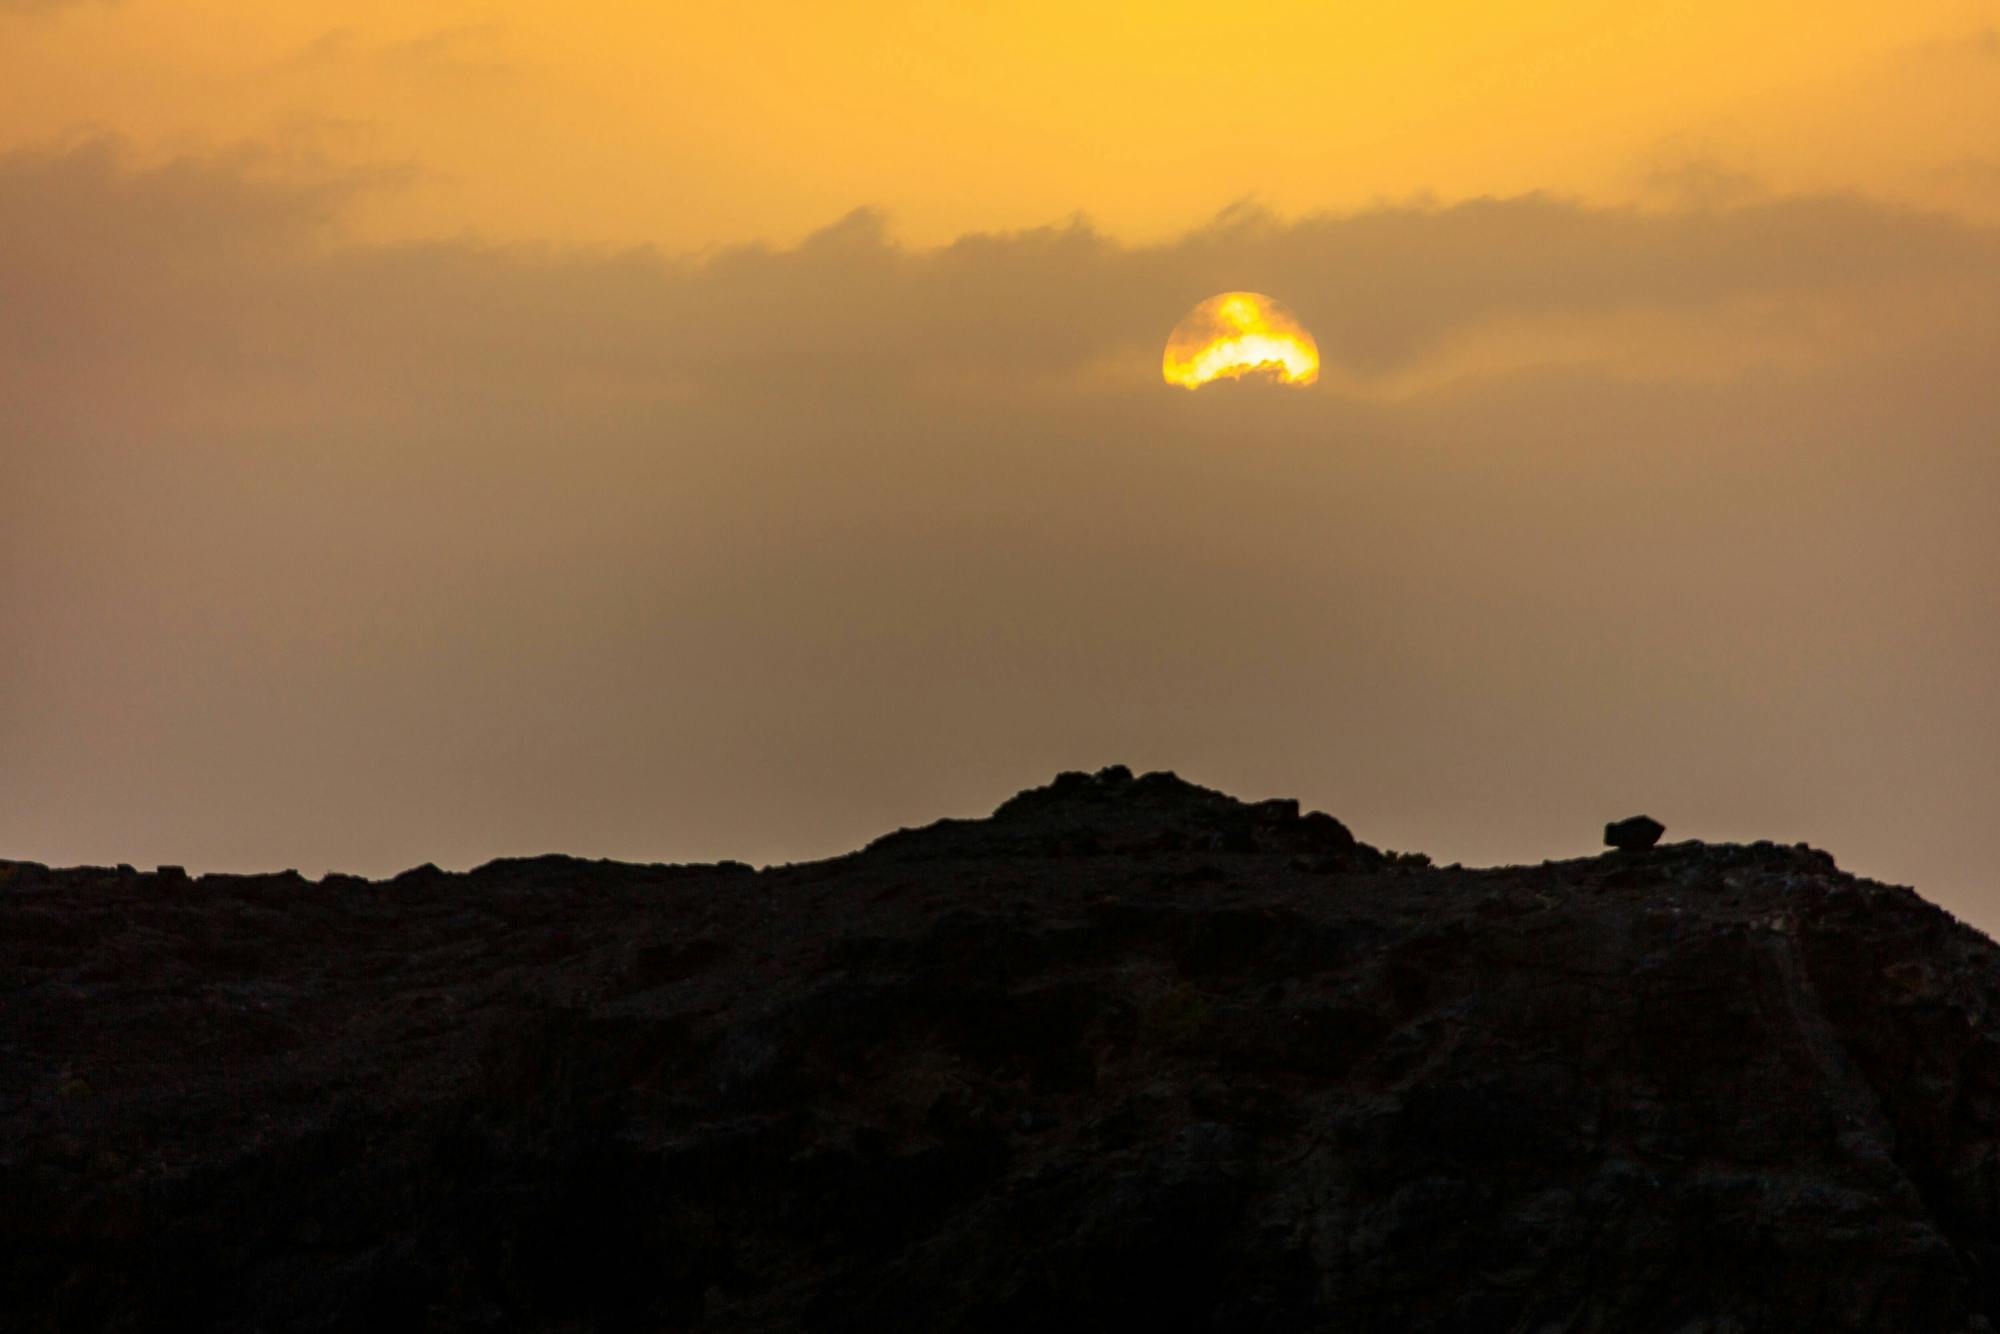 El Cotillo Sunset 4x4 Safari in Fuerteventura with Bayuyo Volcano